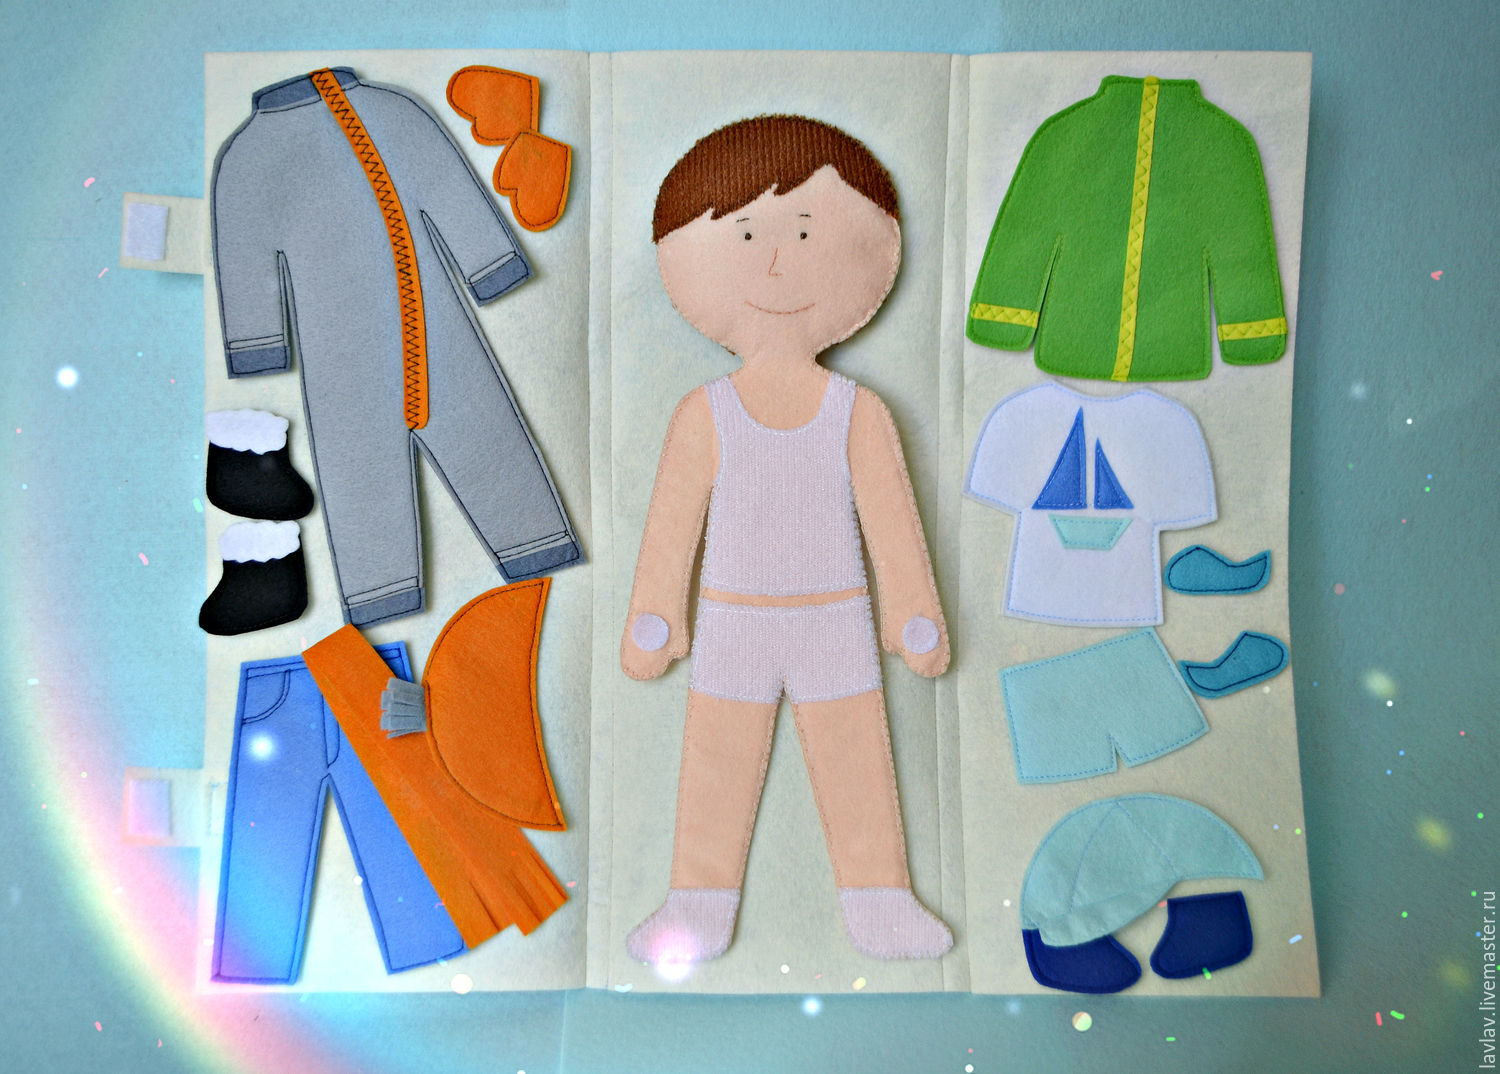 Игра одень мальчика. Картонные куклы с одеждой. Одежда для кукол. Бумажные куклы с одеждой. Бумажный ребенок с одеждой.